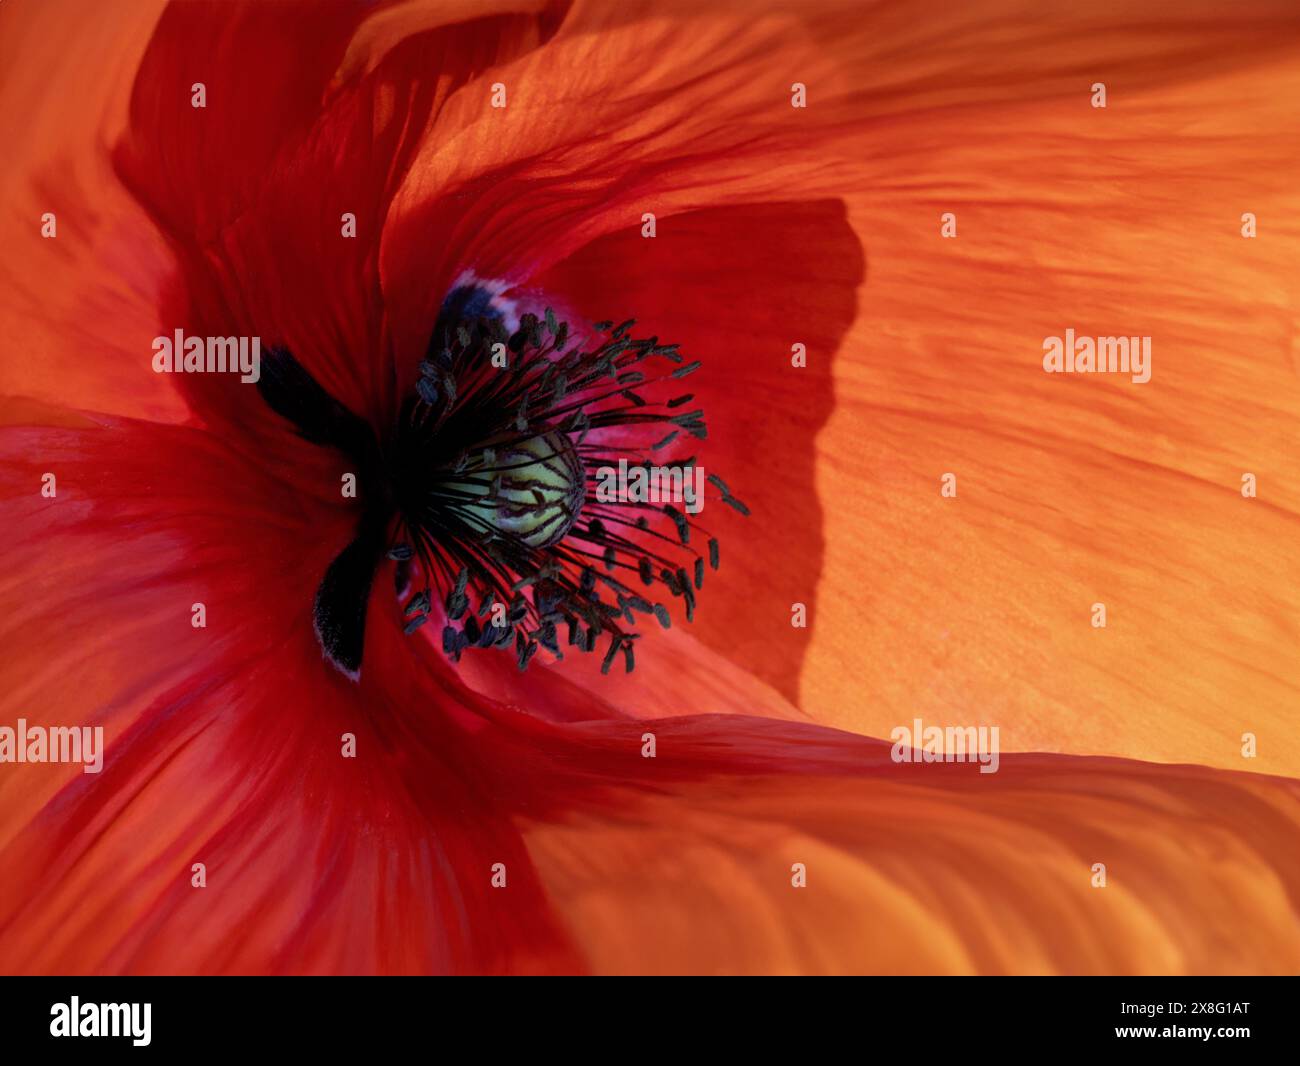 Mohnblume, die einem Auge ähnelt, kreative Fotografie-Konzeptaufnahme Stockfoto